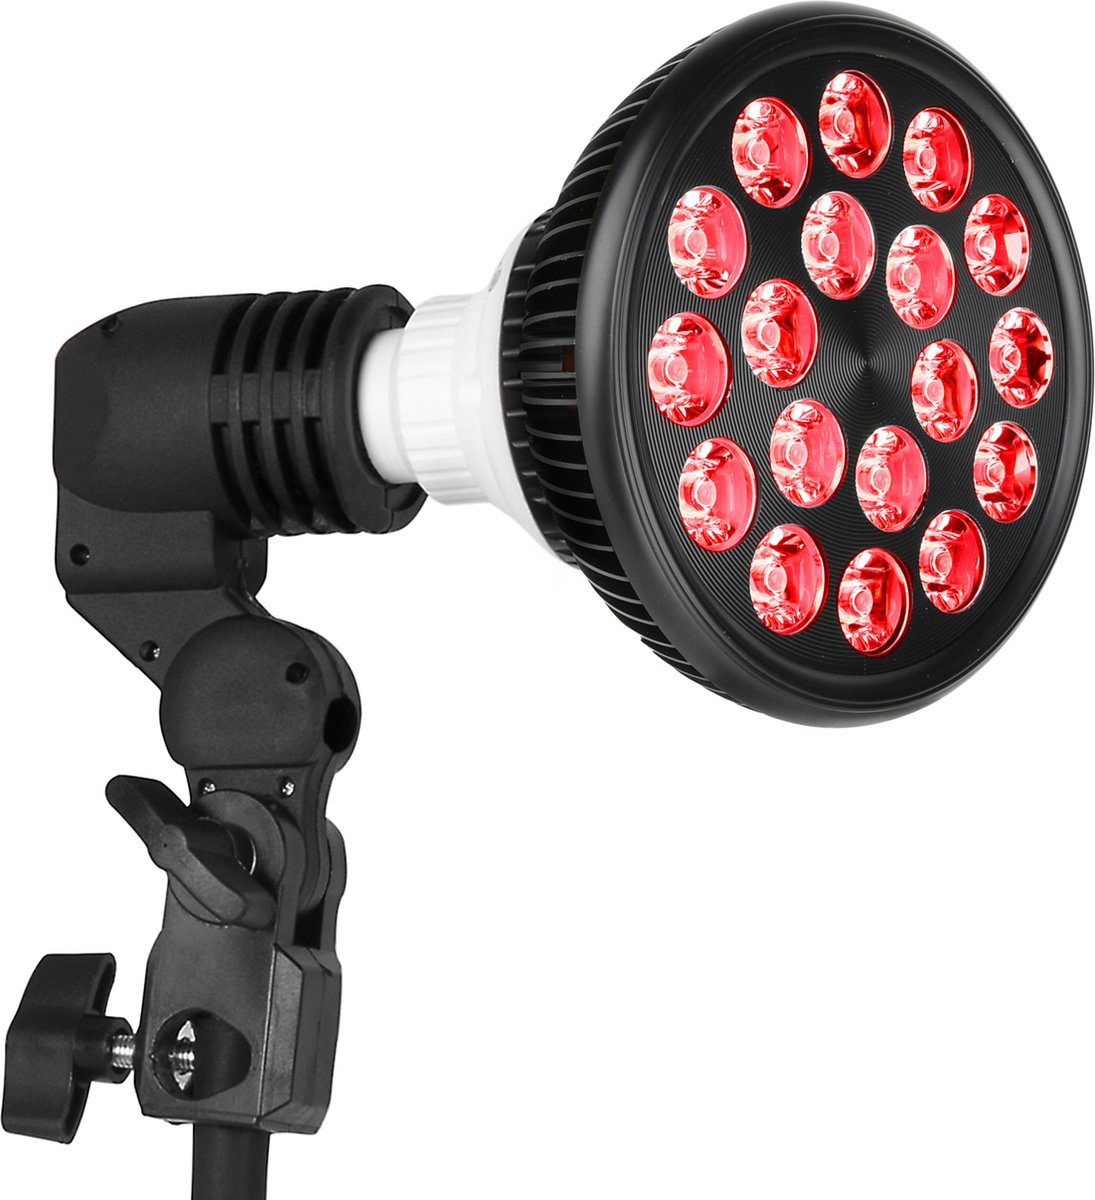 Silvergear Rood Licht Lamp - Verlicht stijfheid, spierpijn en gewrichtspijn - Verbetert Bloedcirculatie - Handige Tafelklem - 54 Watt - Silvergear